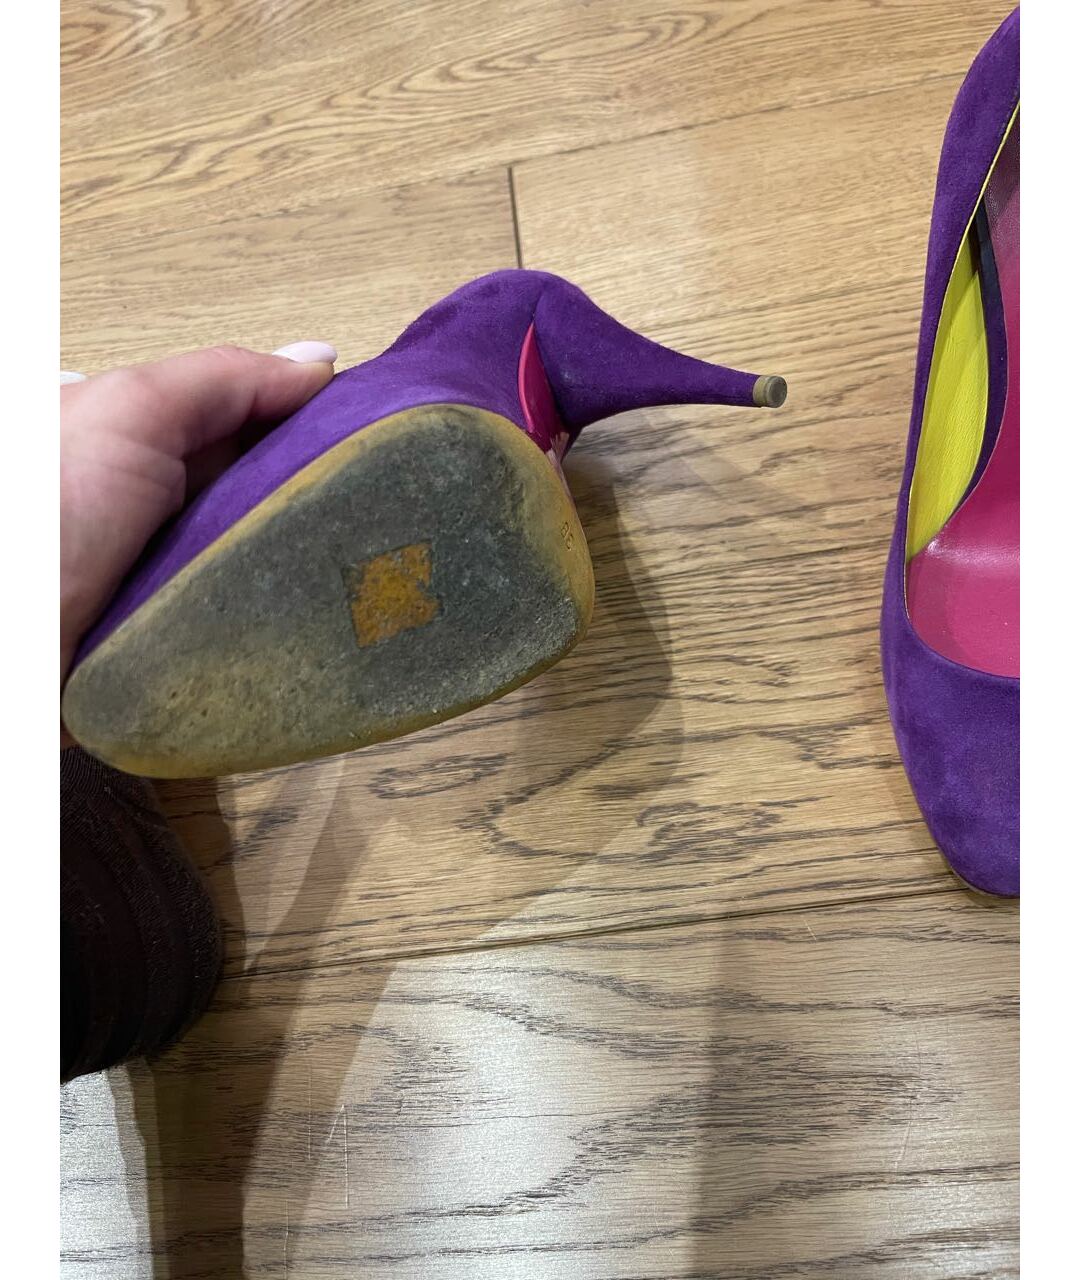 MIU MIU Фиолетовые замшевые туфли, фото 4